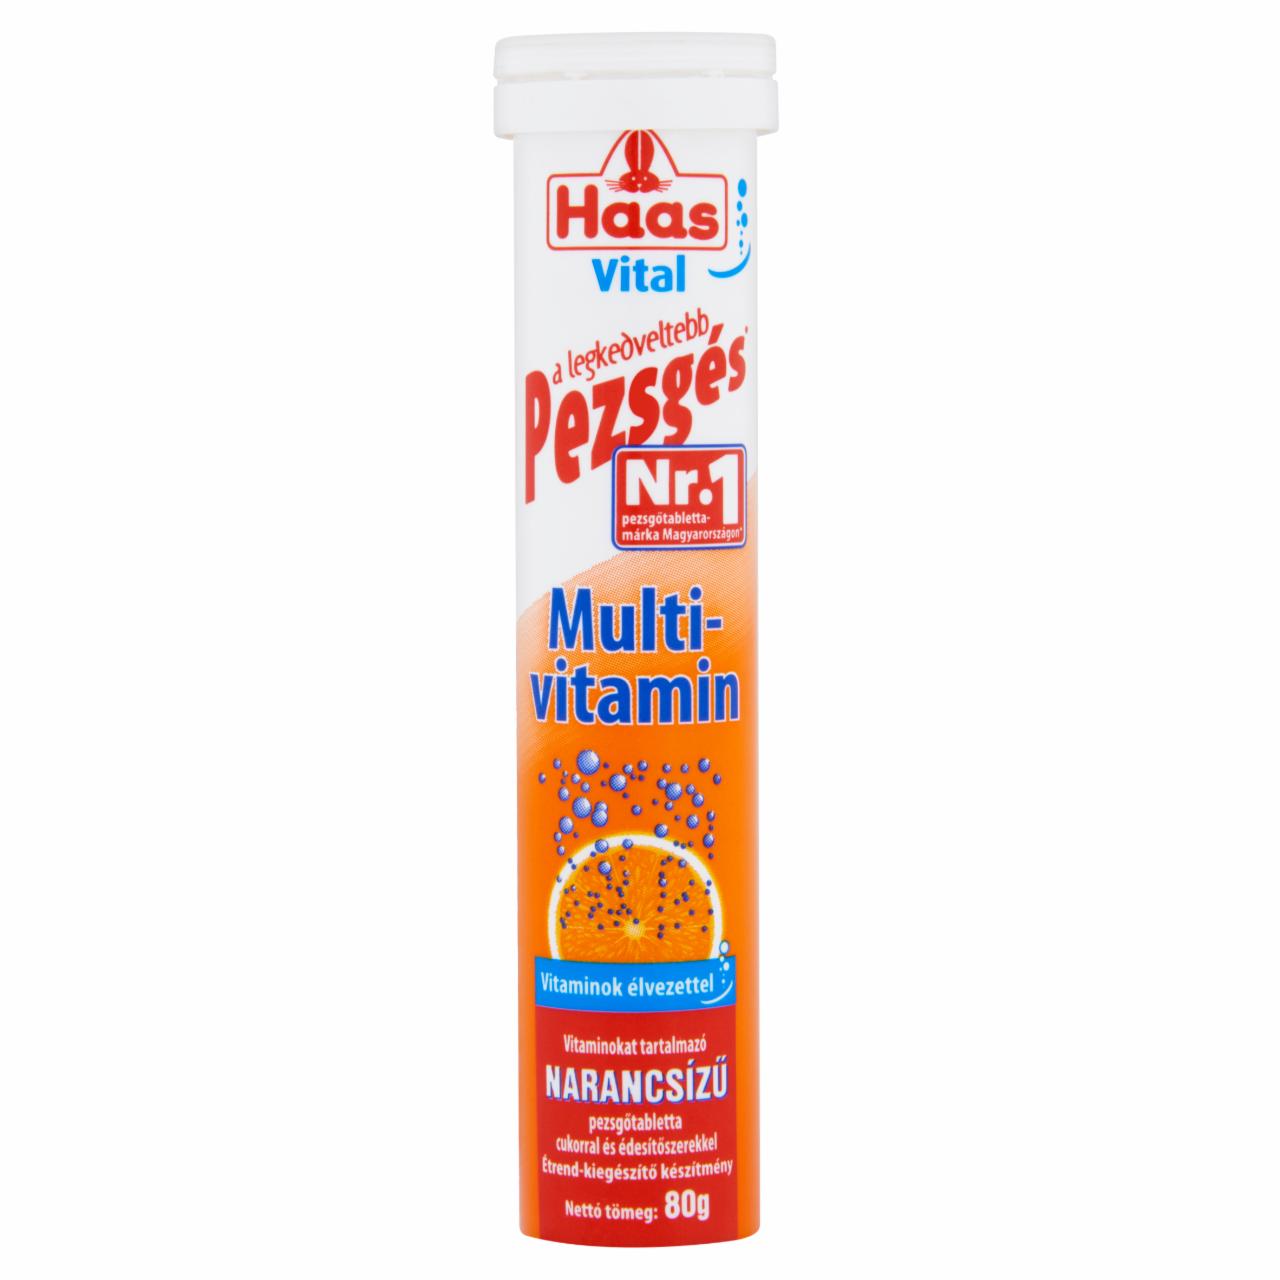 Képek - Haas Vital Multivitamin narancsízű étrend-kiegészítő pezsgőtabletta 80 g